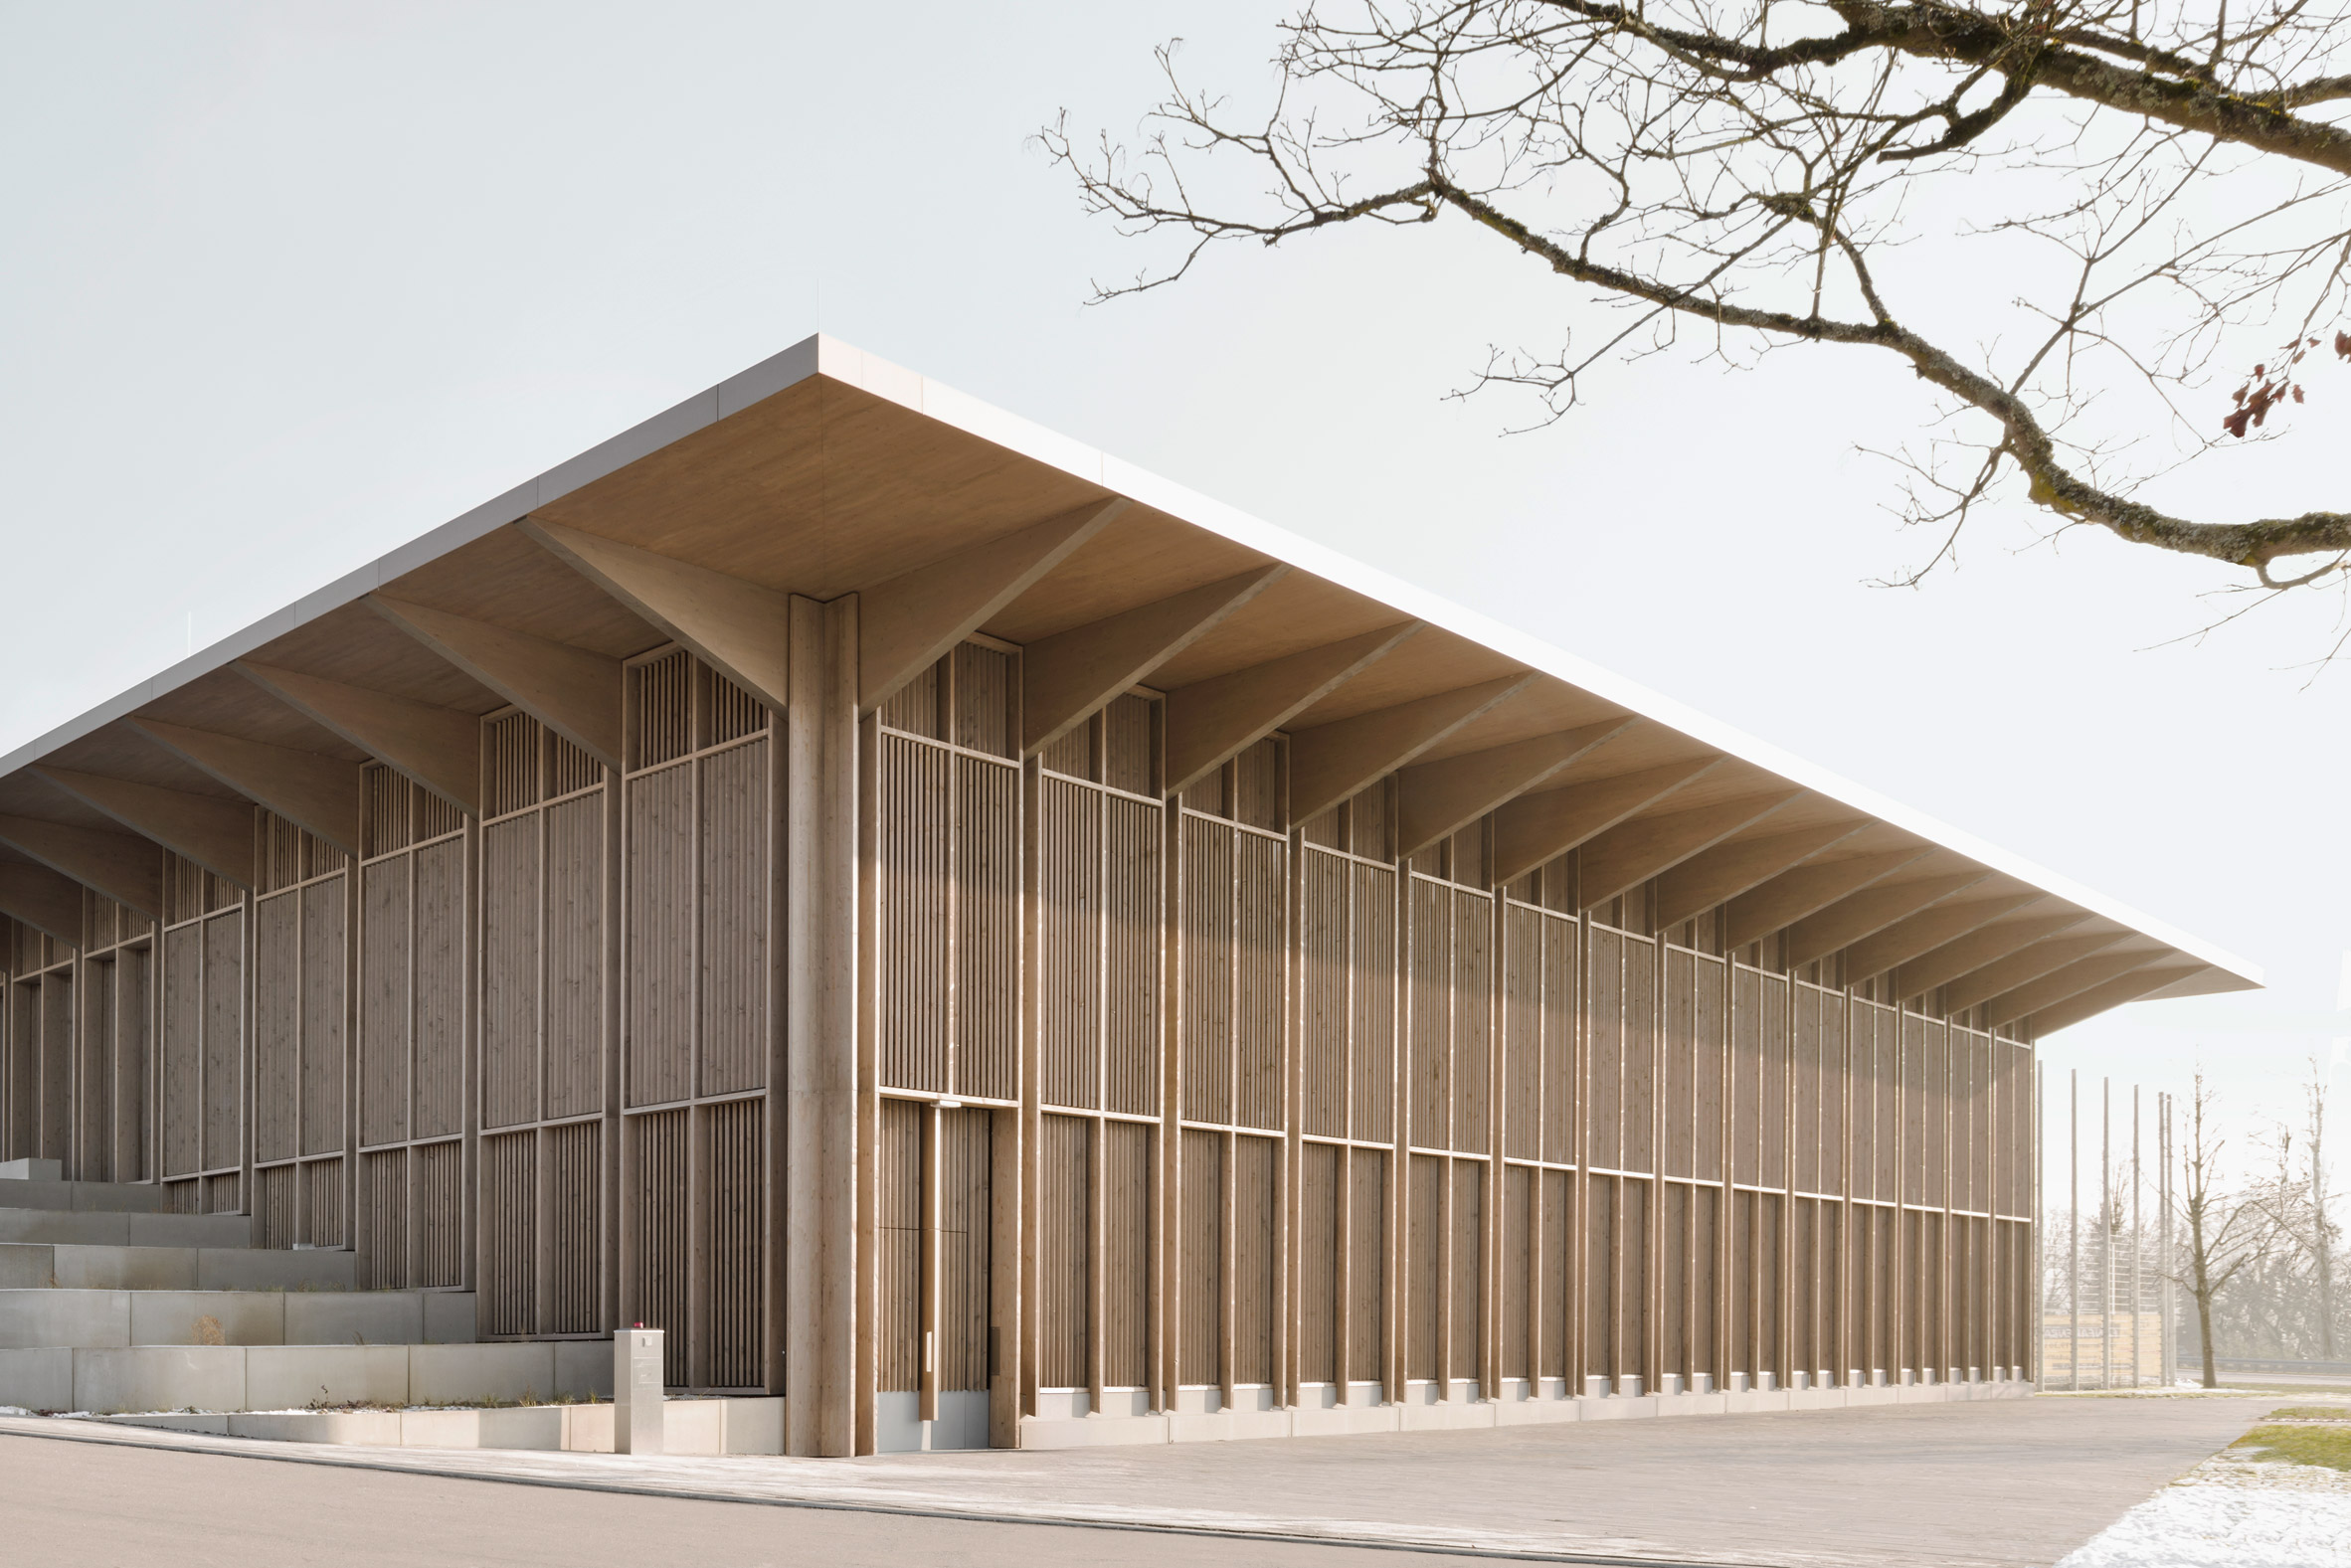 Markolfhalle Markelfingen multipurpose timber hall by Steimle Architekten